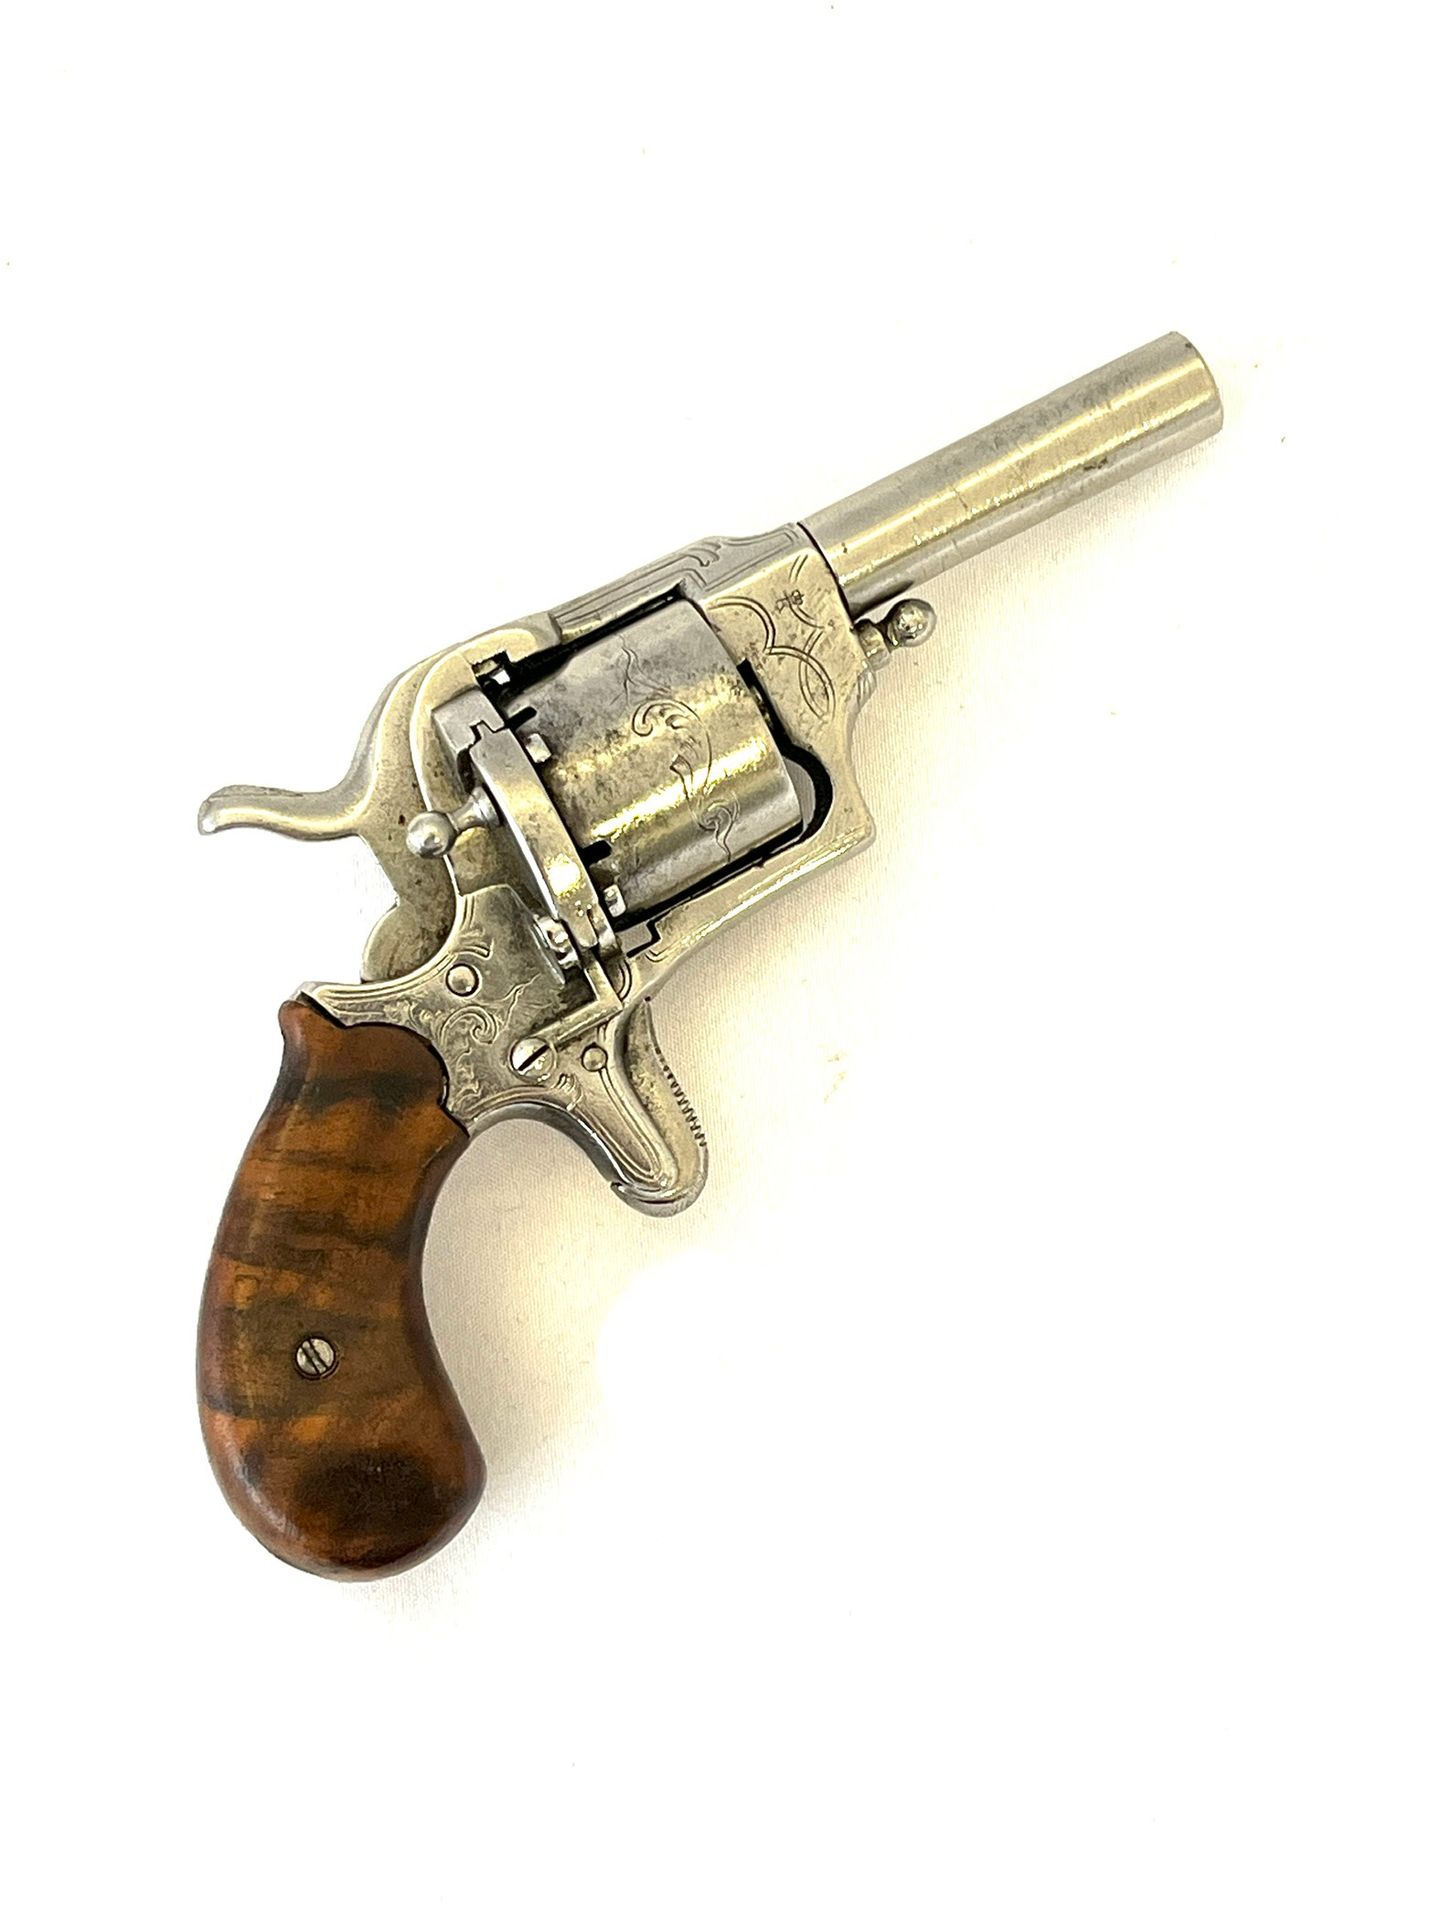 Null 平火左轮手枪

袖珍模型

7毫米口径，65毫米圆形枪管，雕刻的五室枪管，马刺扳机，木板。

磨损，氧化。

TL 165毫米。

19世纪。

D类&hellip;